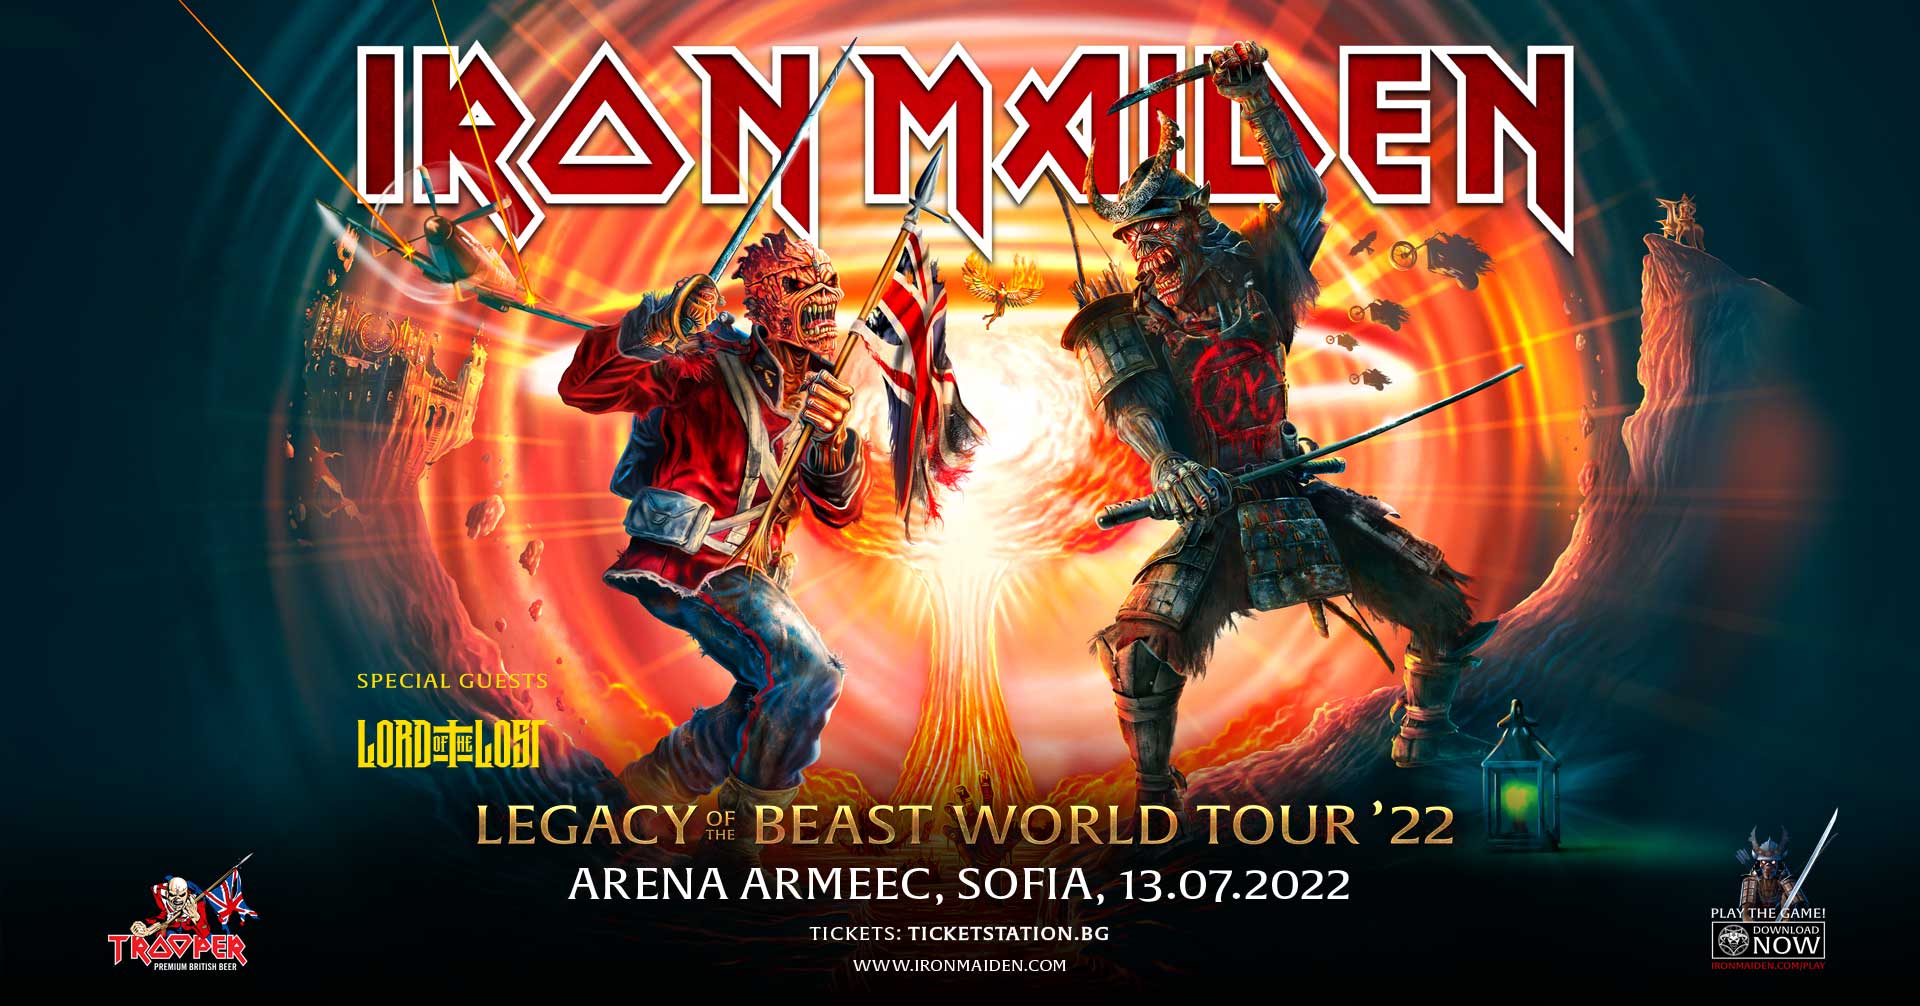 Завърши турнето на Maiden с изнесени 139 концерта и над 3 млн. продадени билета